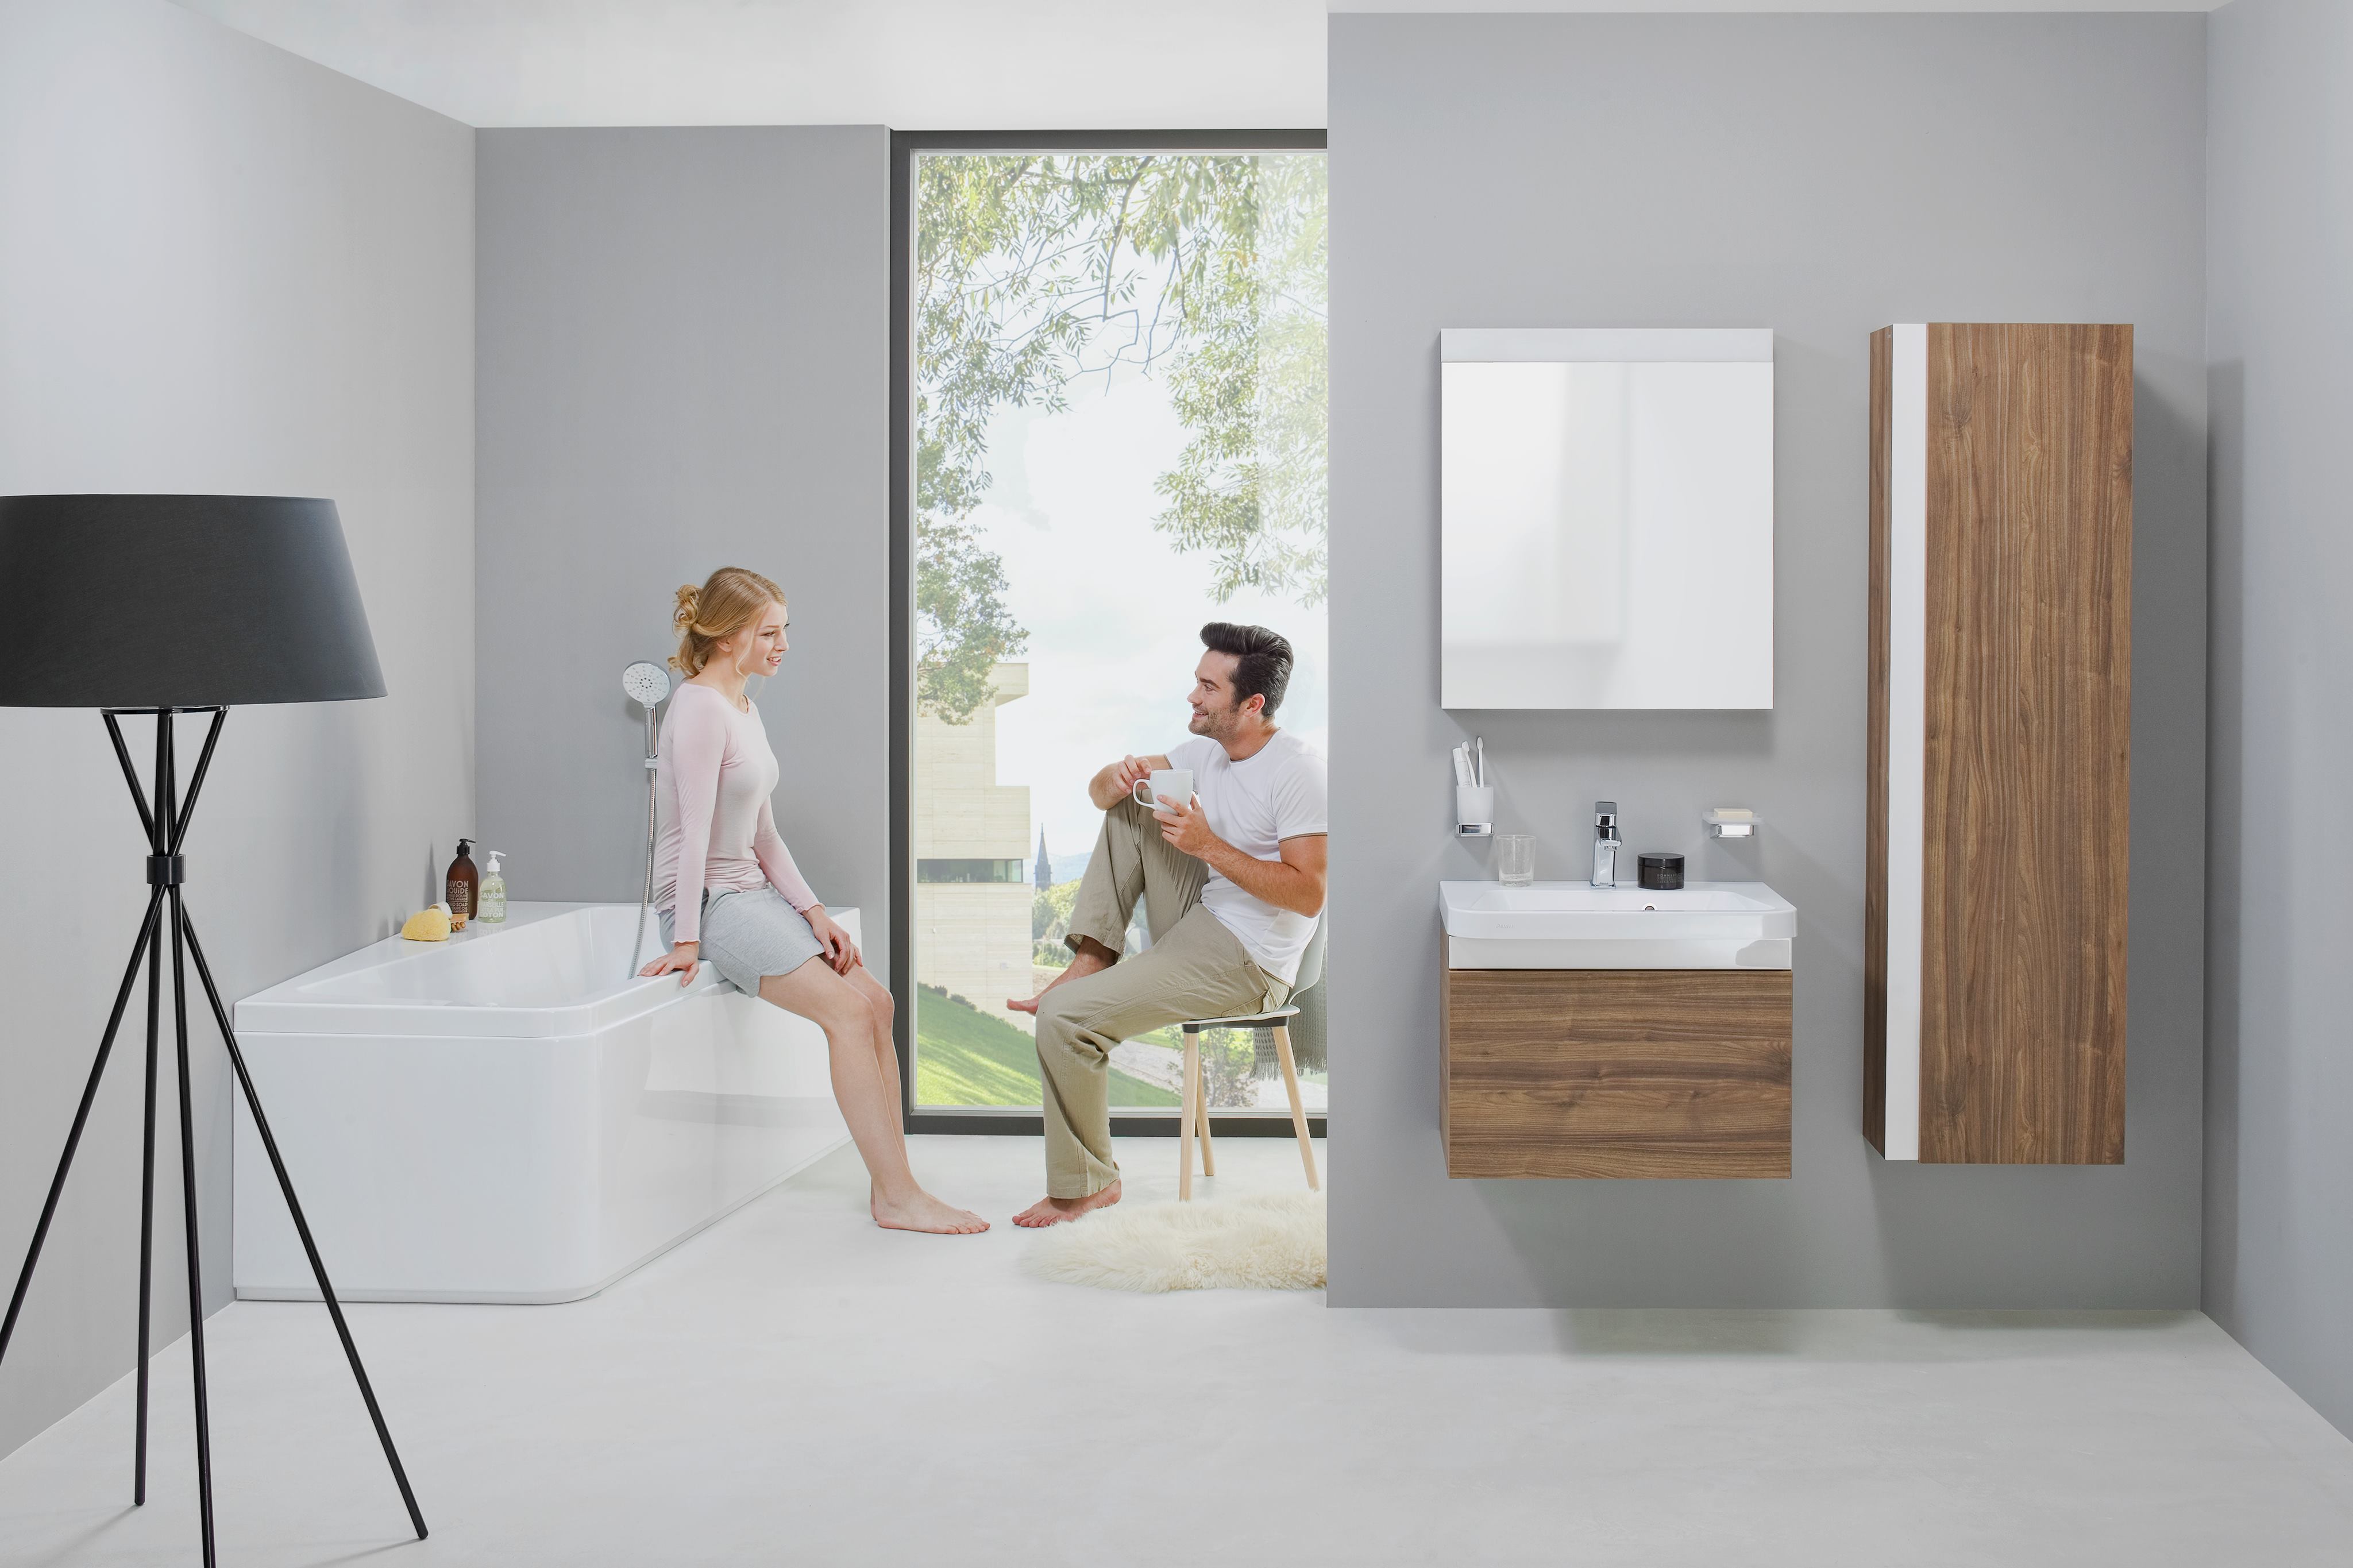 A 10° fürdőszoba koncepció eredeti és innovatív kialakítása minden modern fürdőszobába korszerű megoldásokat szállít.